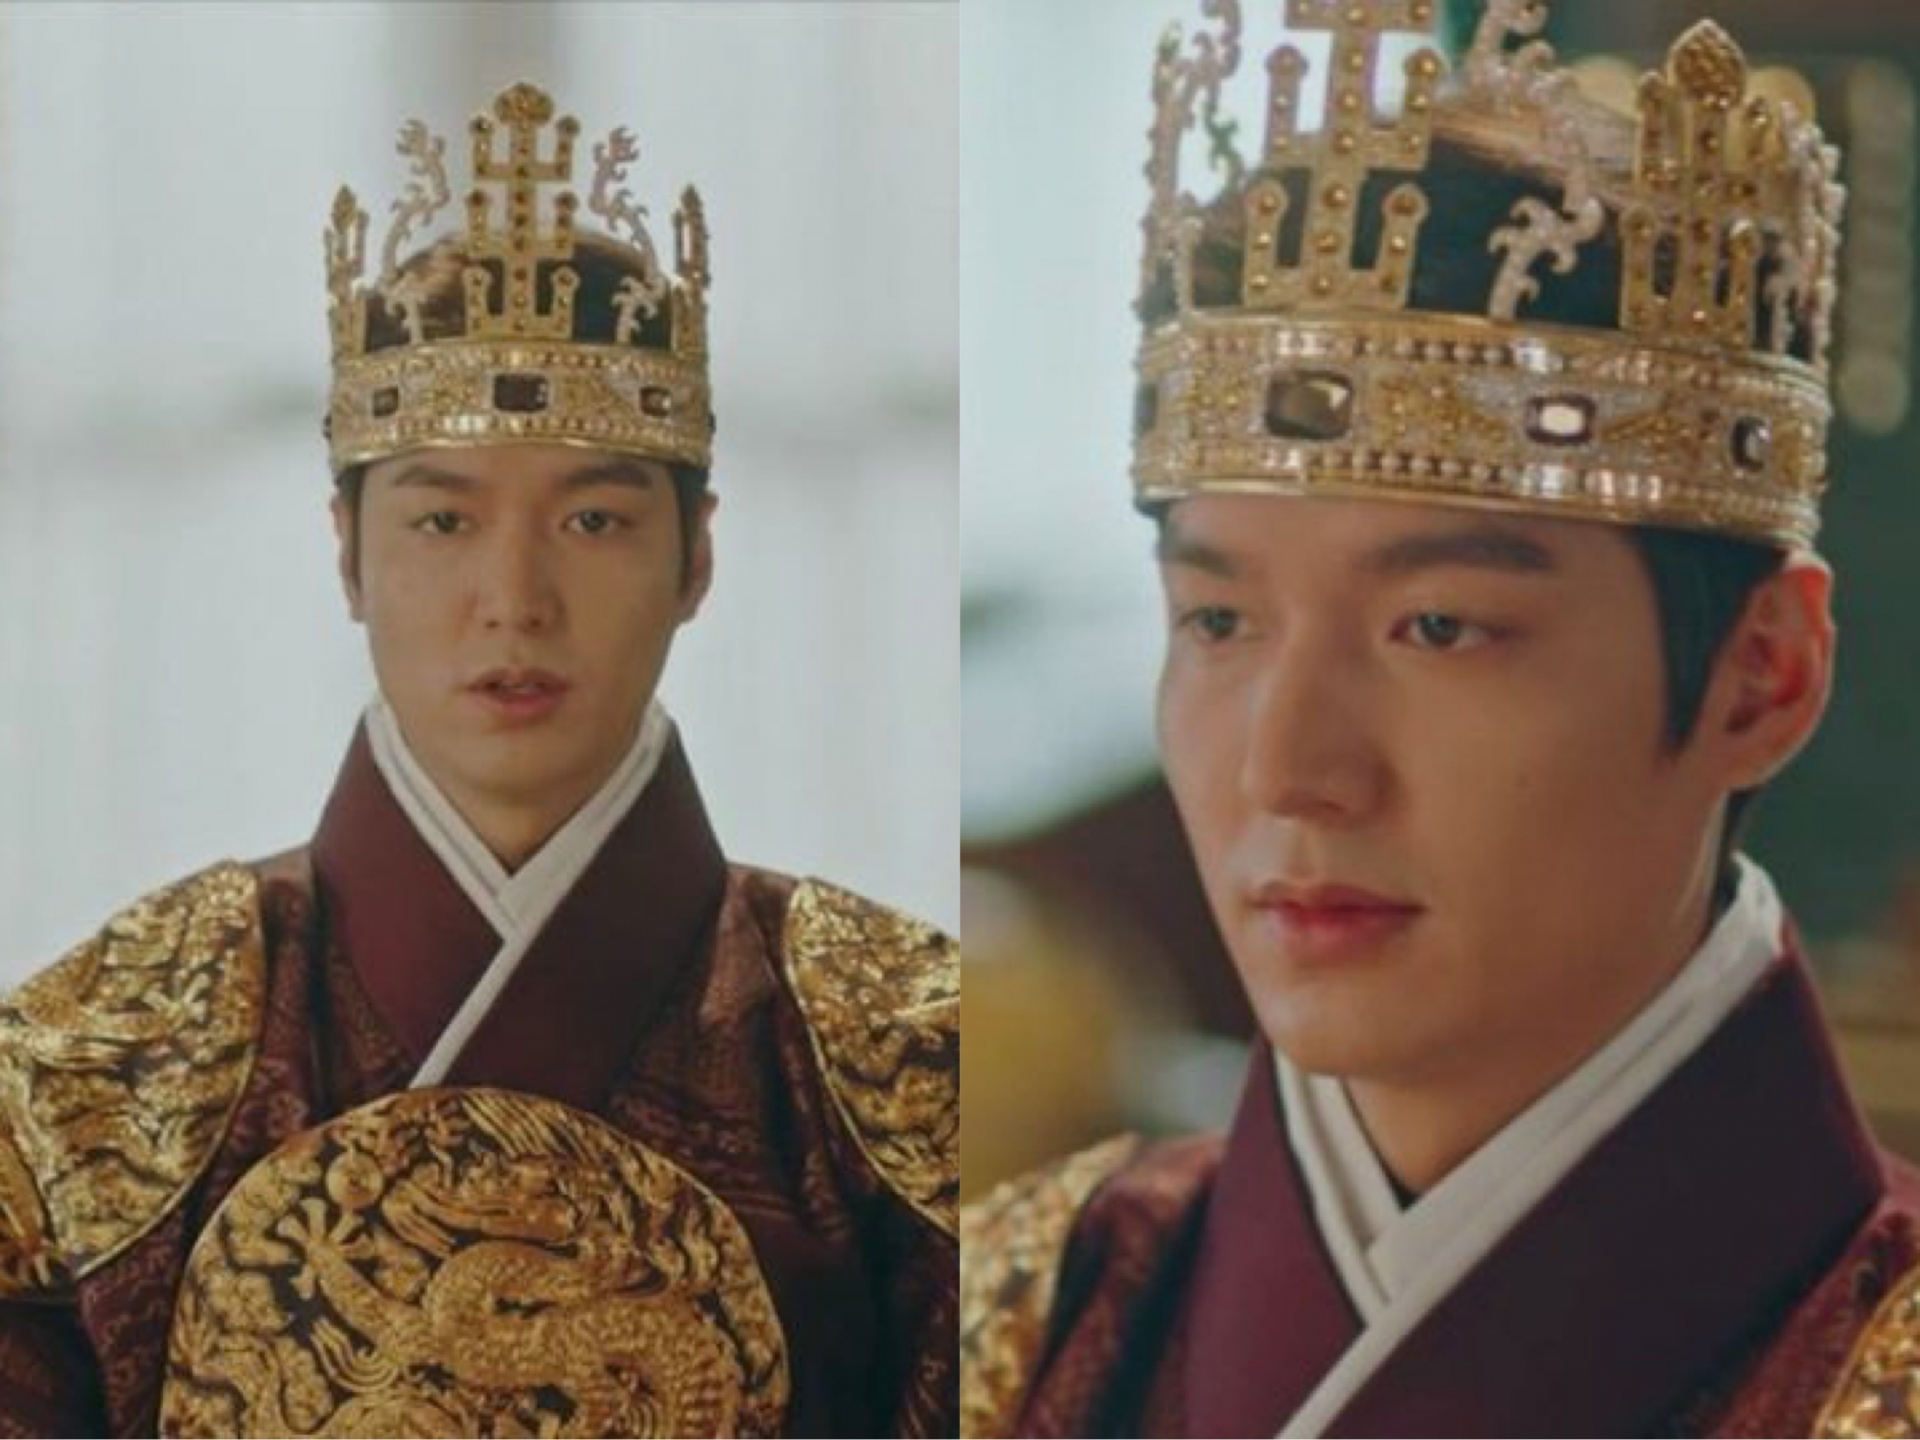 Chiếc vương miện không hề 'ăn nhập' với bộ trang phục khiến Lee Min Ho trông rất hài hước. Mặc dù nam thần giữ biểu cảm lạnh lùng nhưng netizen vẫn không thể nhịn cười nổi.